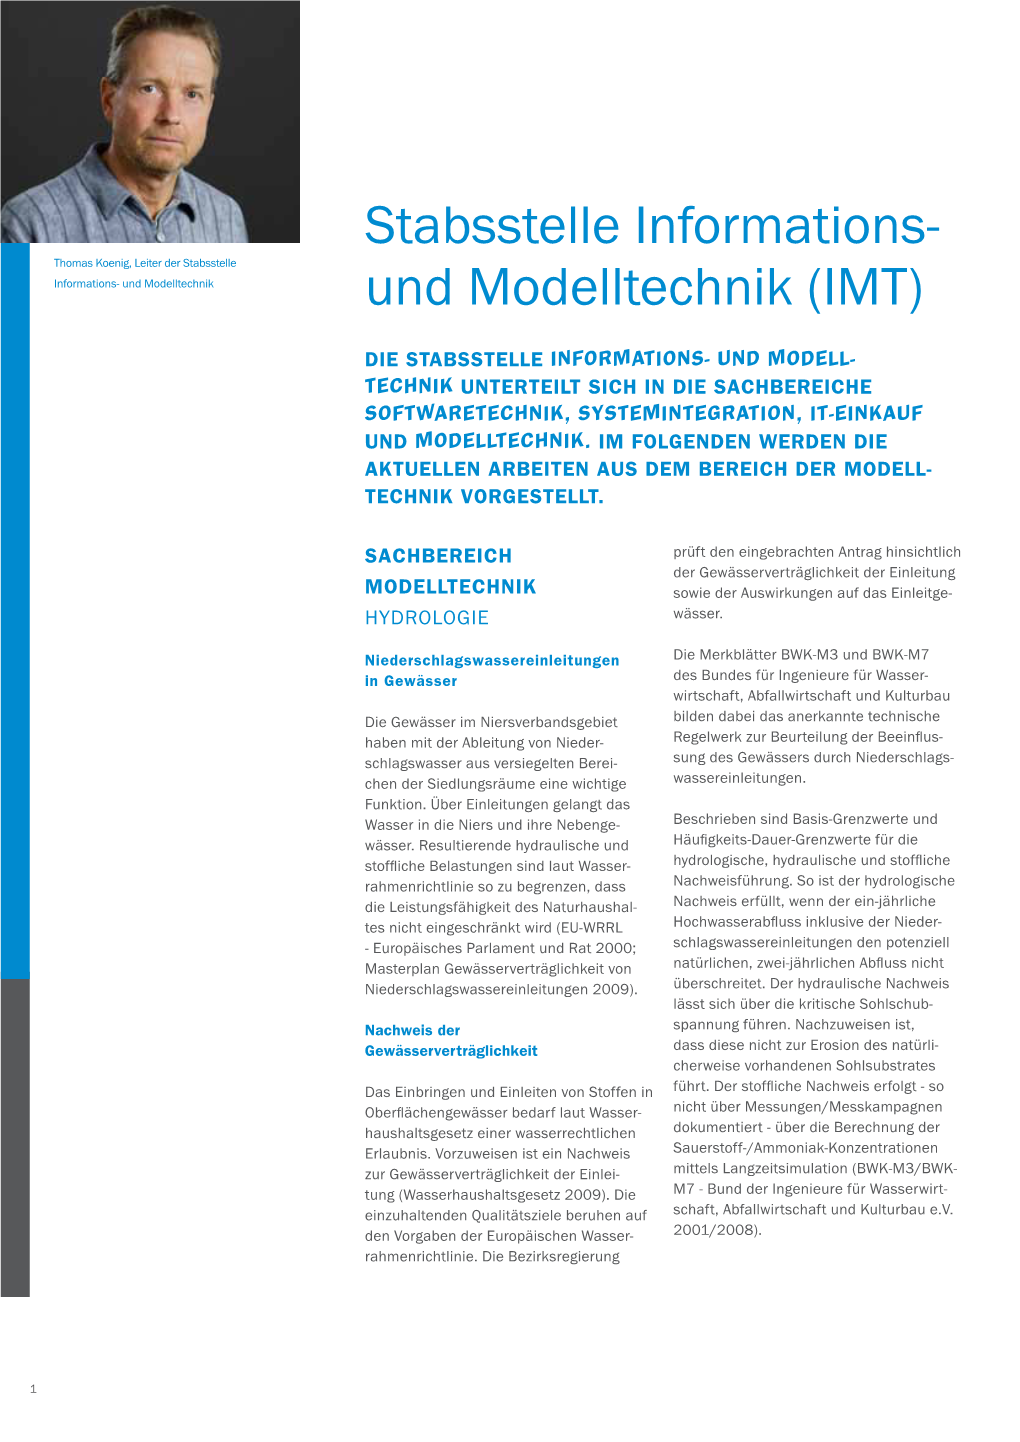 Stabsstelle Informations- Und Modelltechnik Und Modelltechnik (IMT)